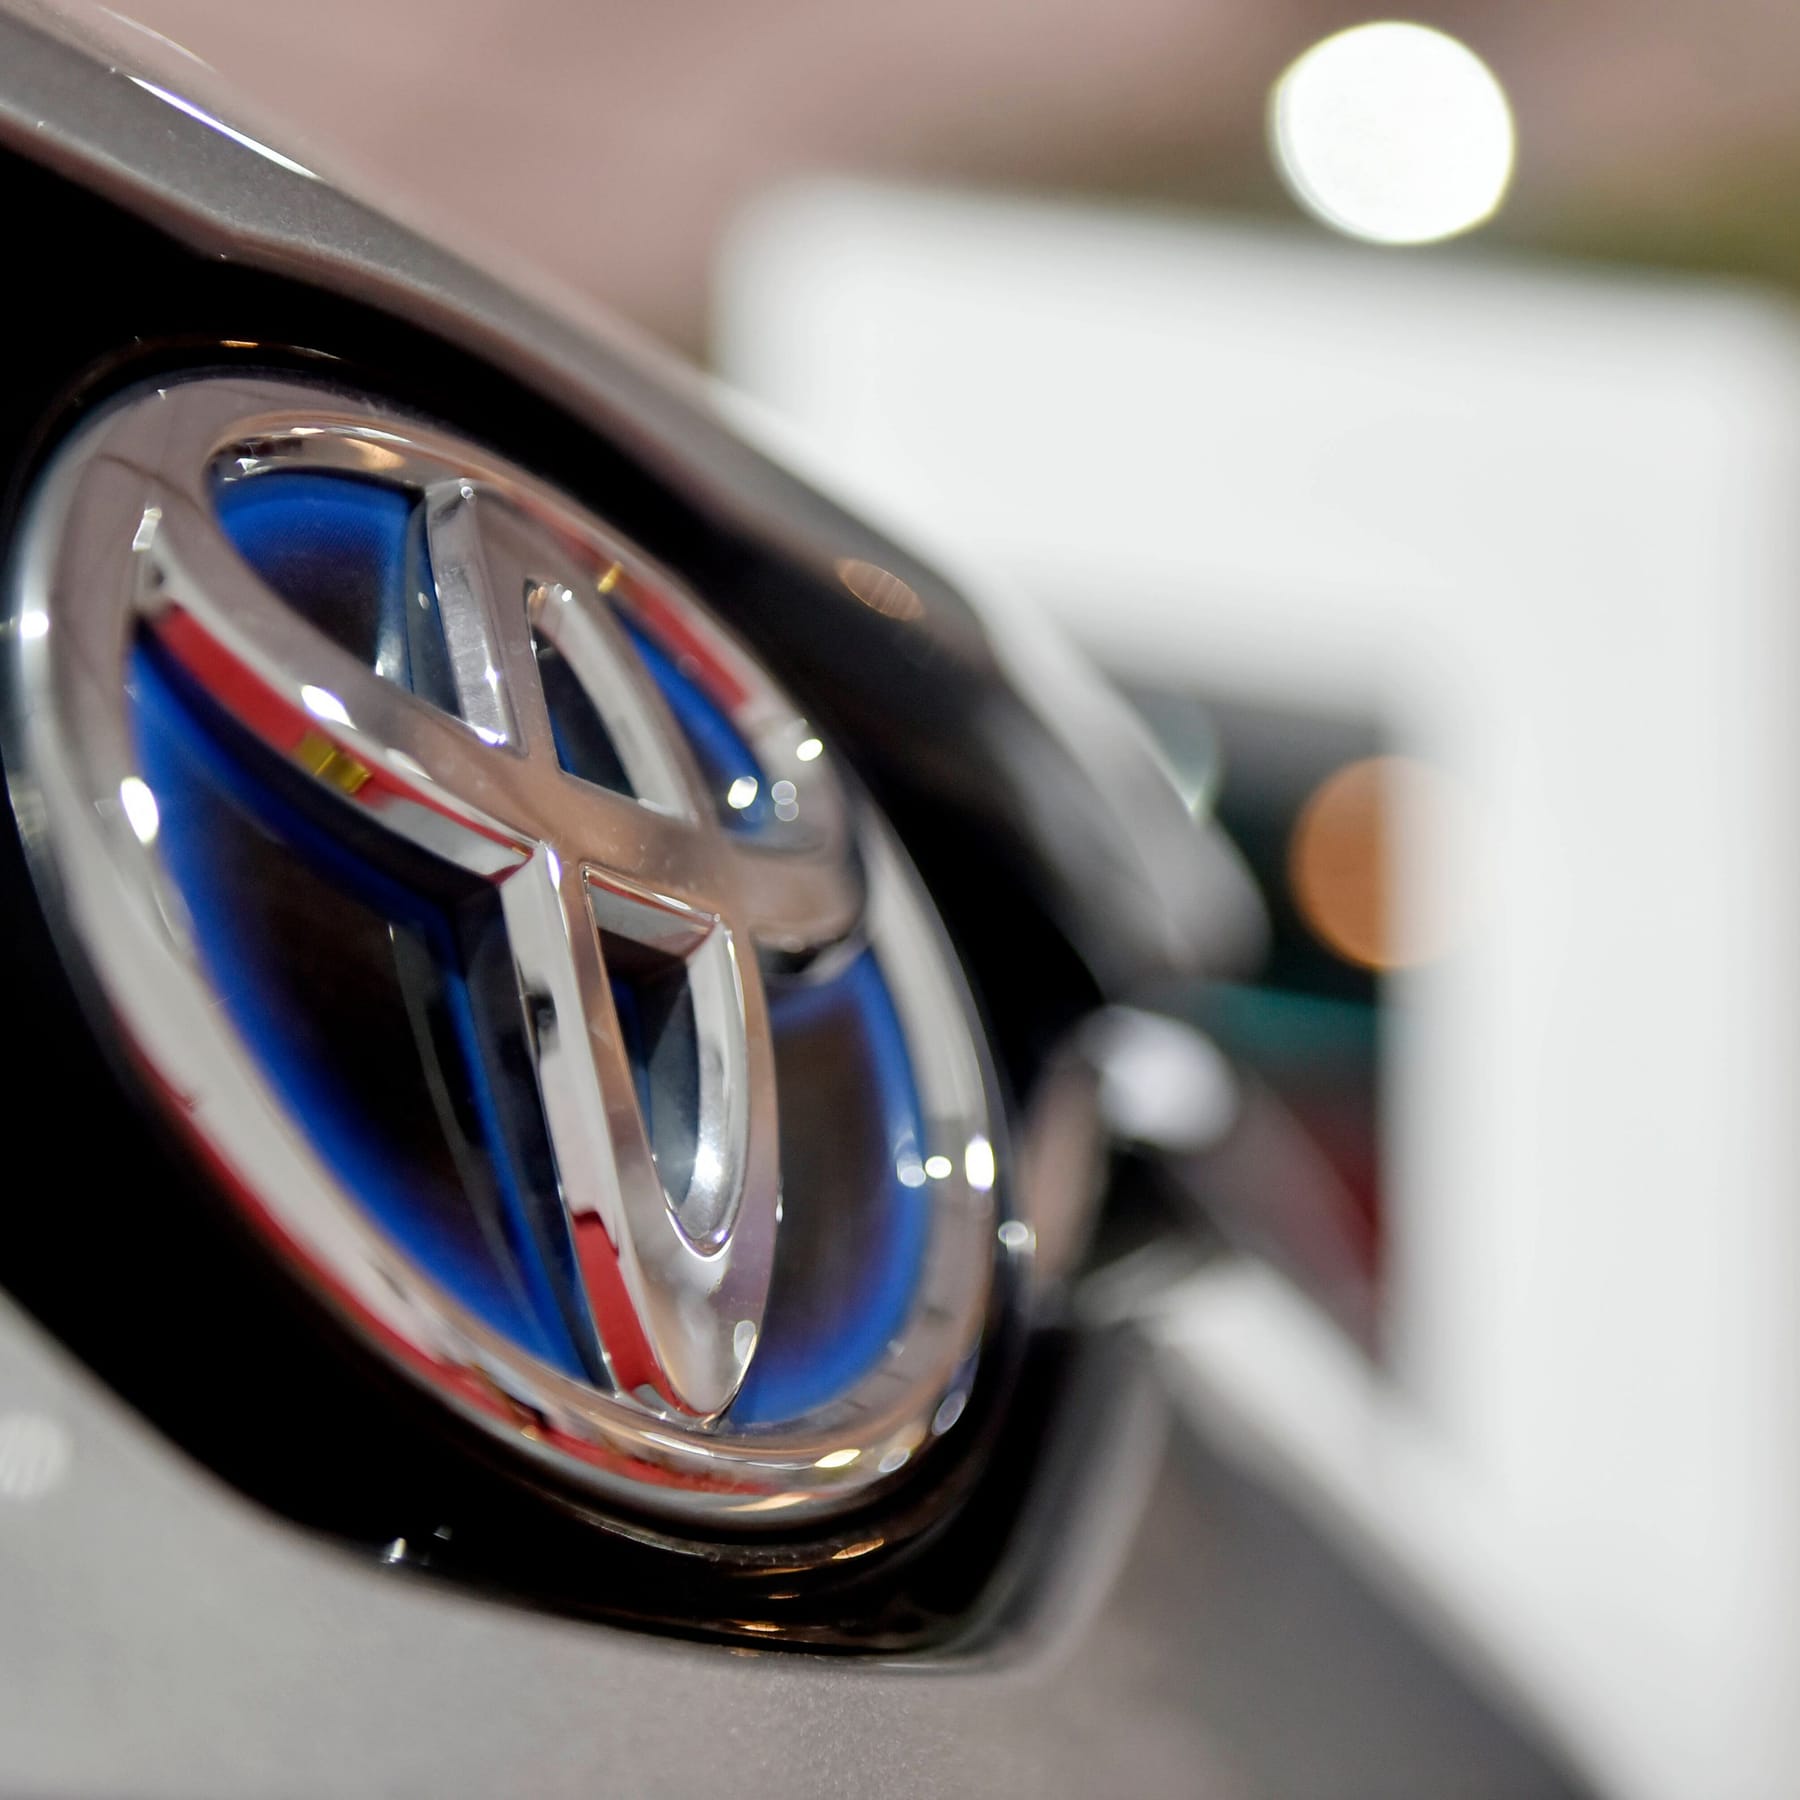 Elektroauto: Toyota meldet Batterie-Durchbruch beim E-Auto